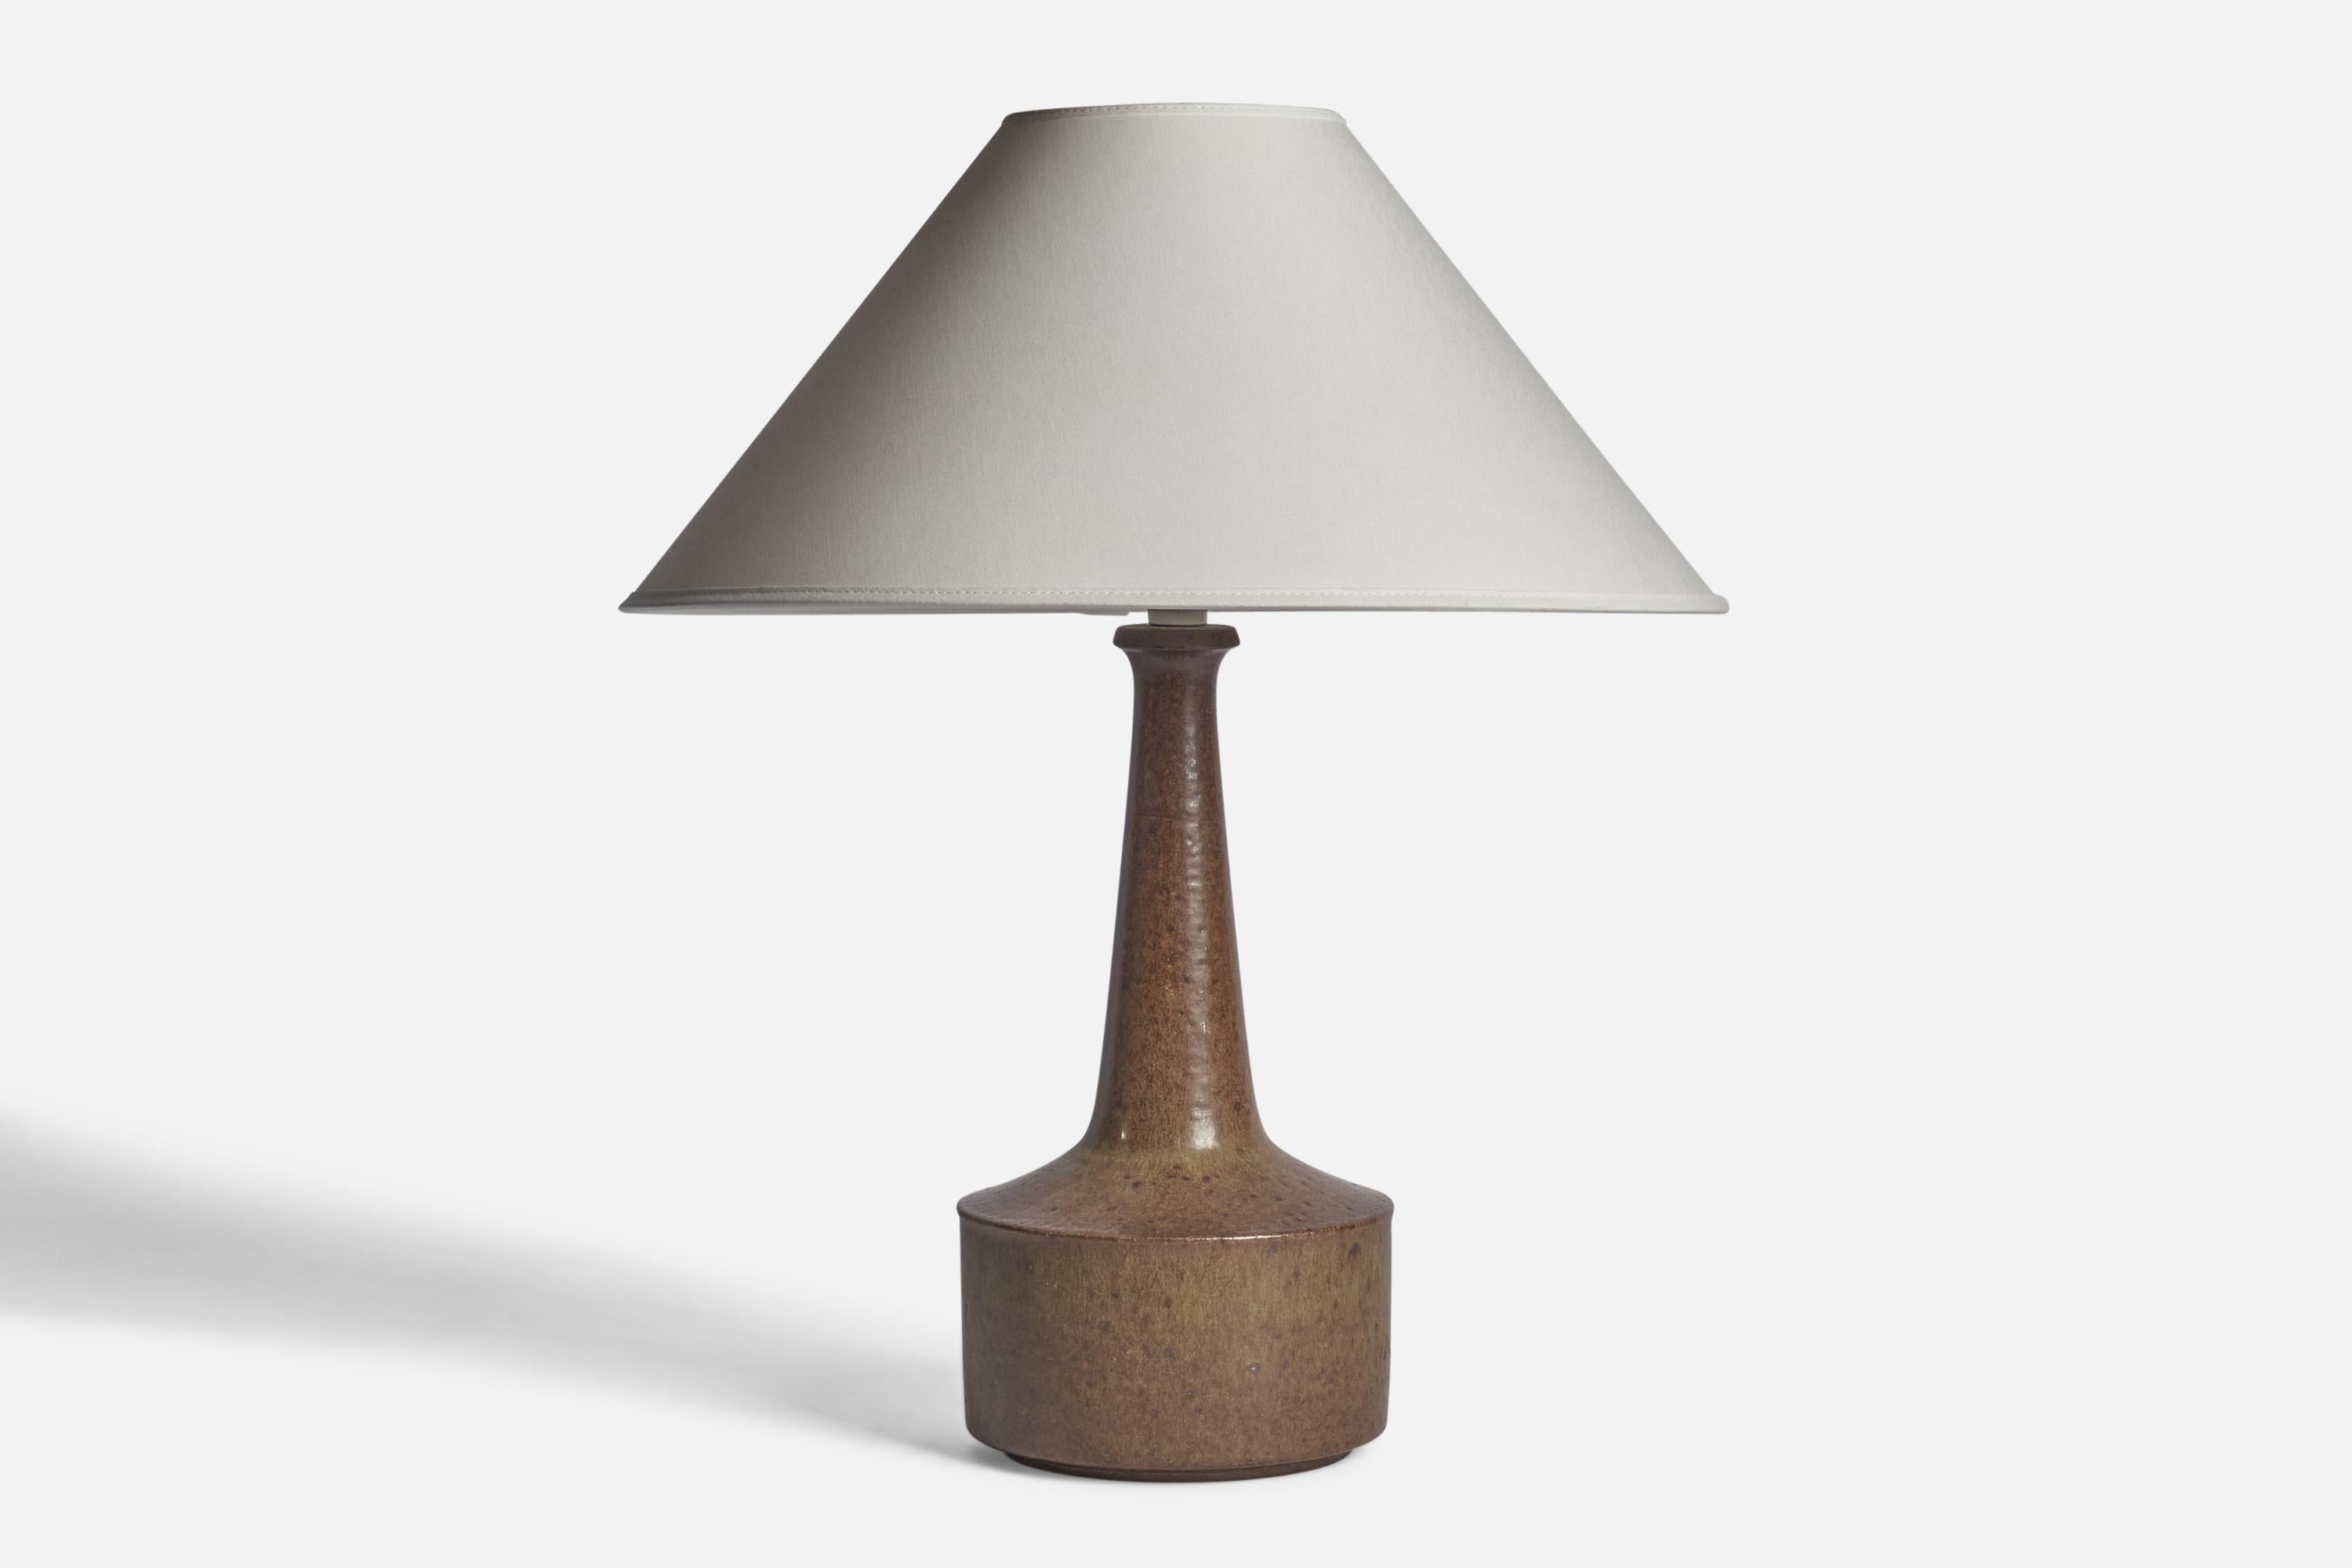 Lampe de table en grès émaillé brun, conçue par Per & Annelise Linneman-Schmidt et produite par Palshus, Danemark, années 1960

Dimensions de la lampe (pouces) : 14.5